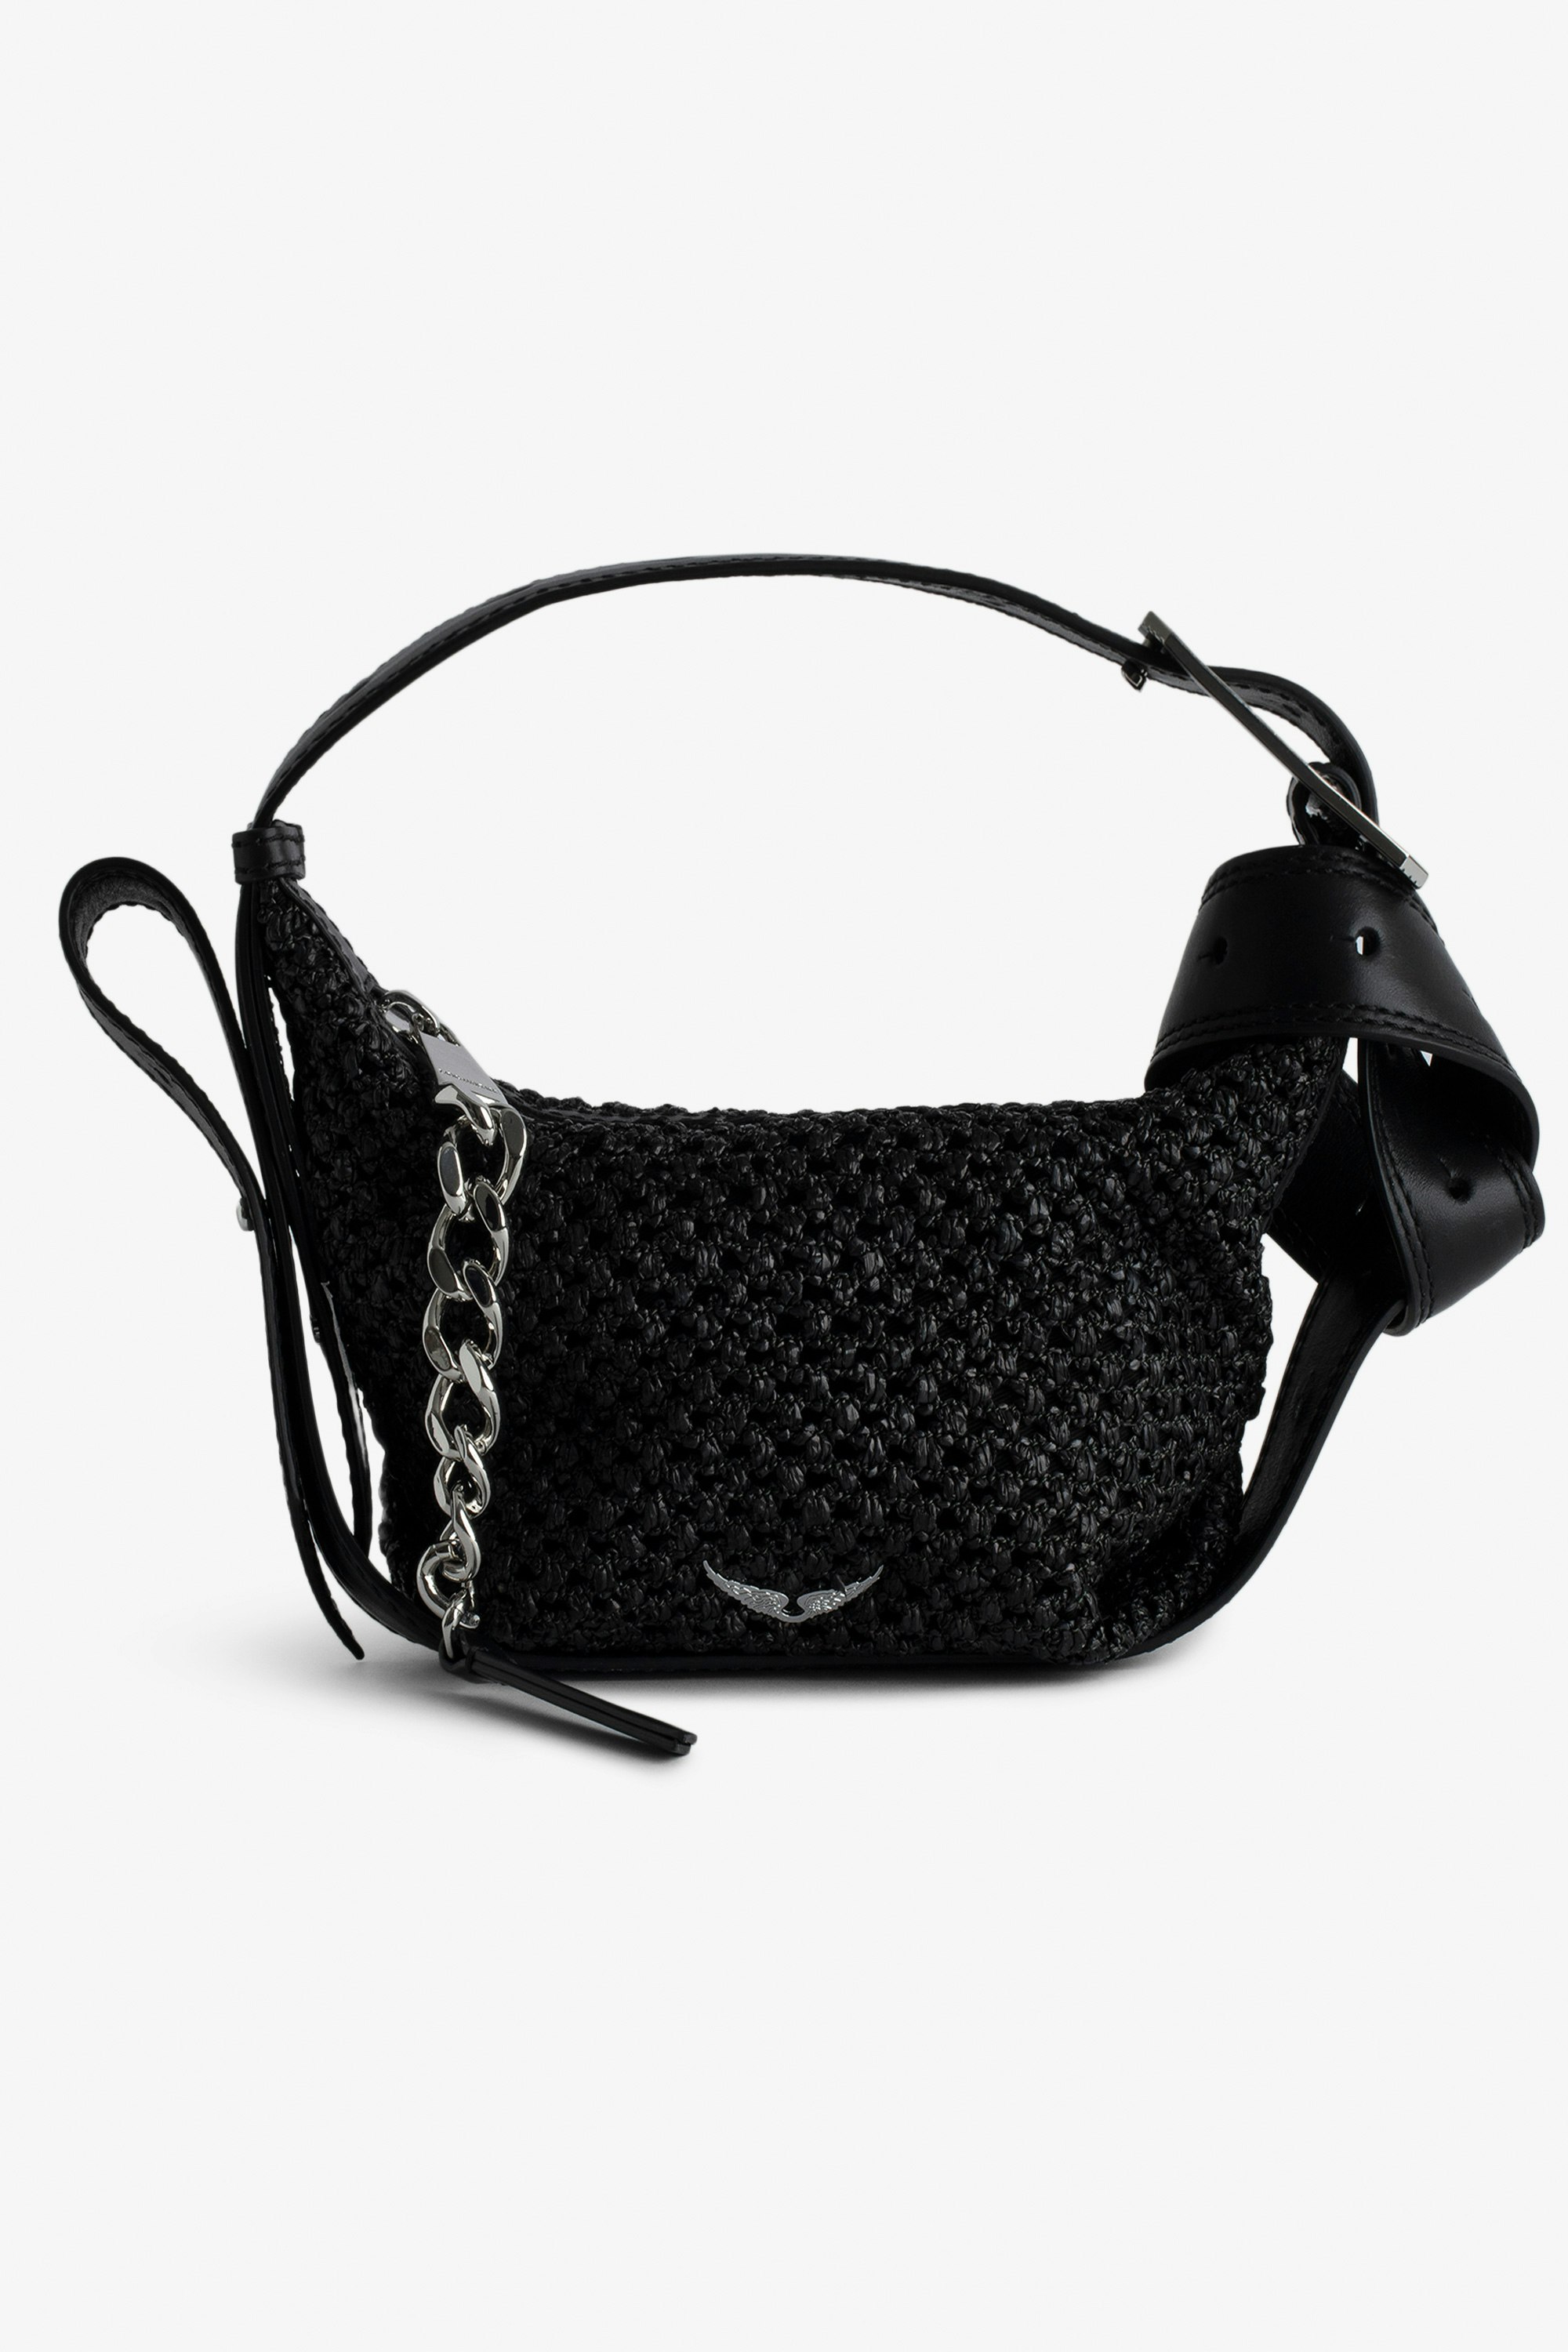 Borsa Le Cecilia XS - Piccola borsa effetto cestino nera con tracolla in pelle e fibbia metallica a C.